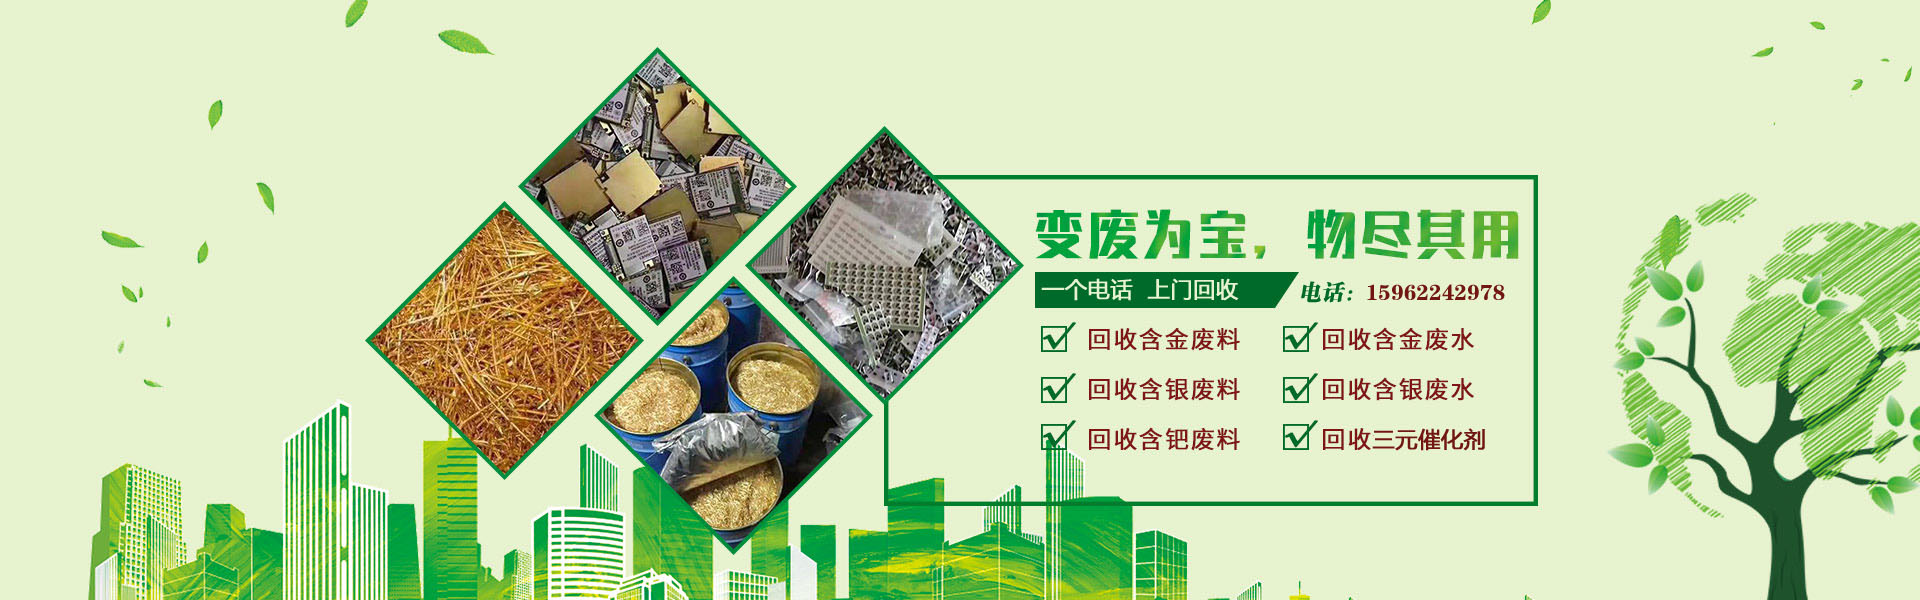 上海贵金属回收中心